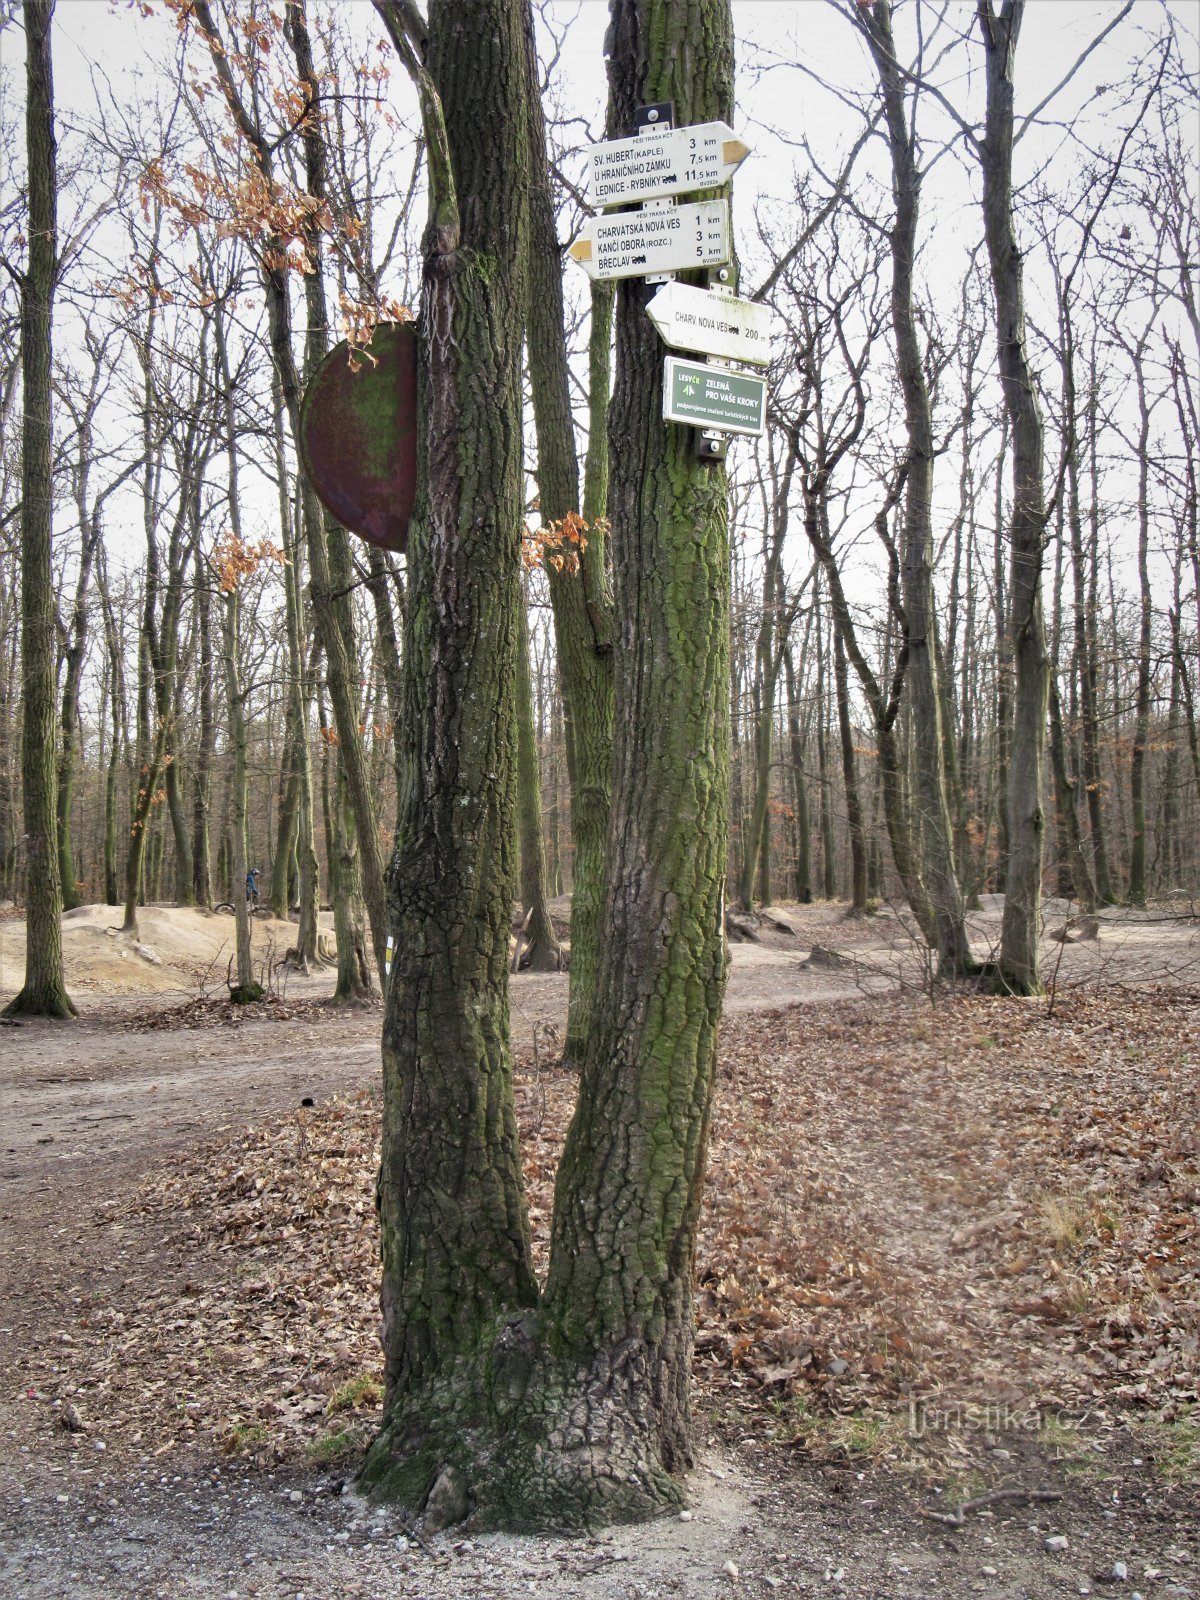 La encrucijada turística Charvátská Nová Ves, vía férrea, se encuentra al borde del bosque